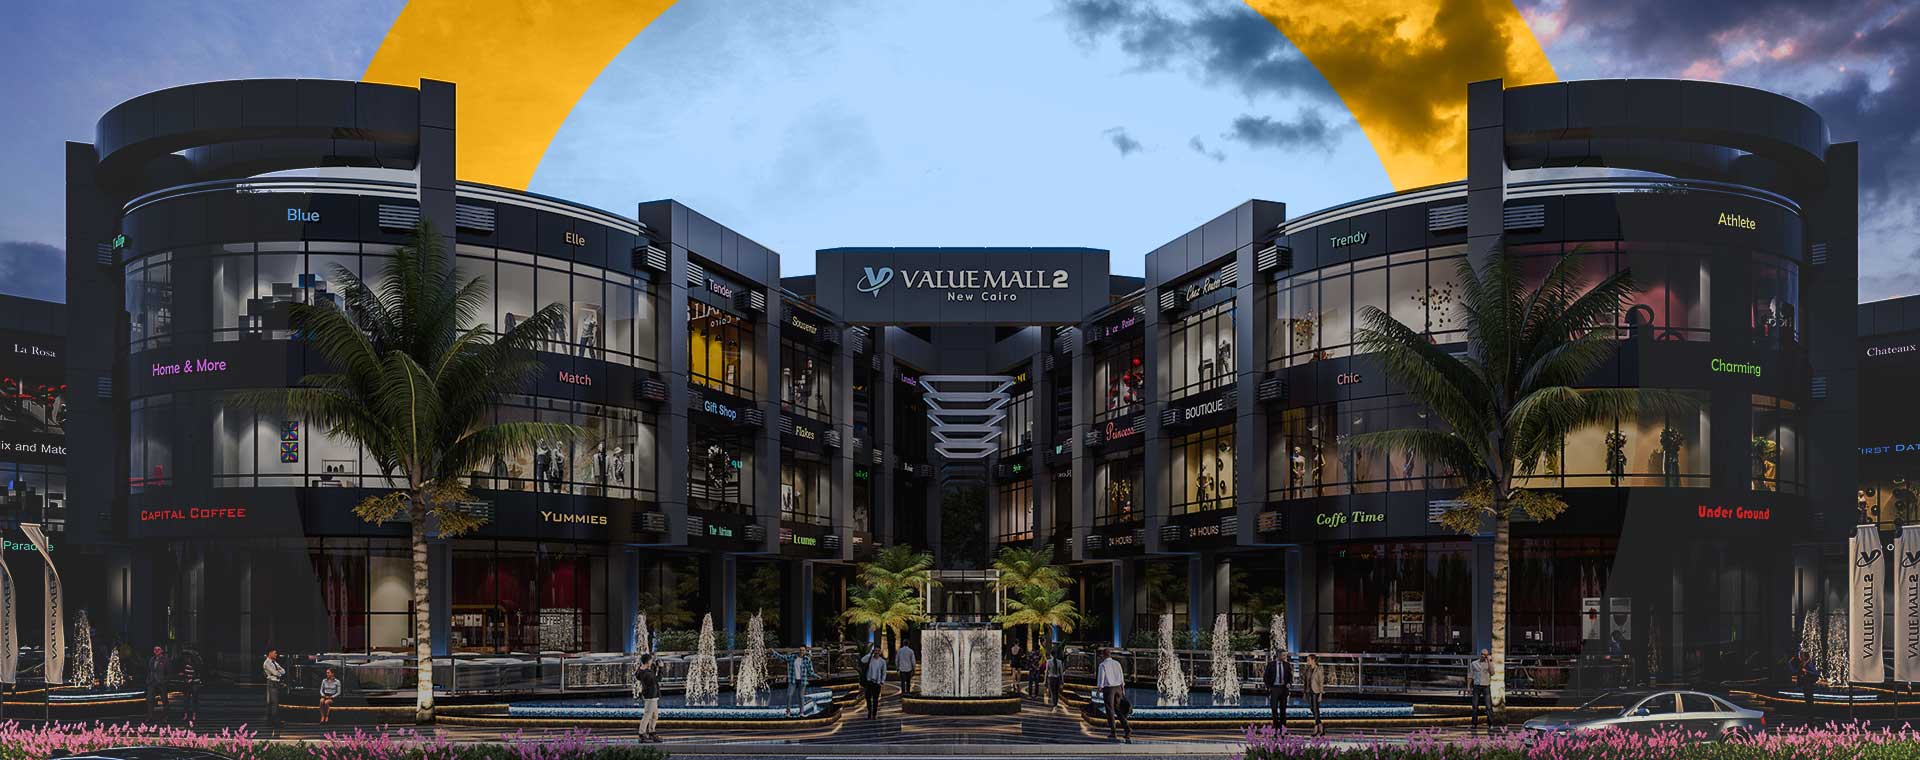 فاليو 2 مول القاهرة الجديدة سمارت جروب – Value 2 Mall  New Cairo